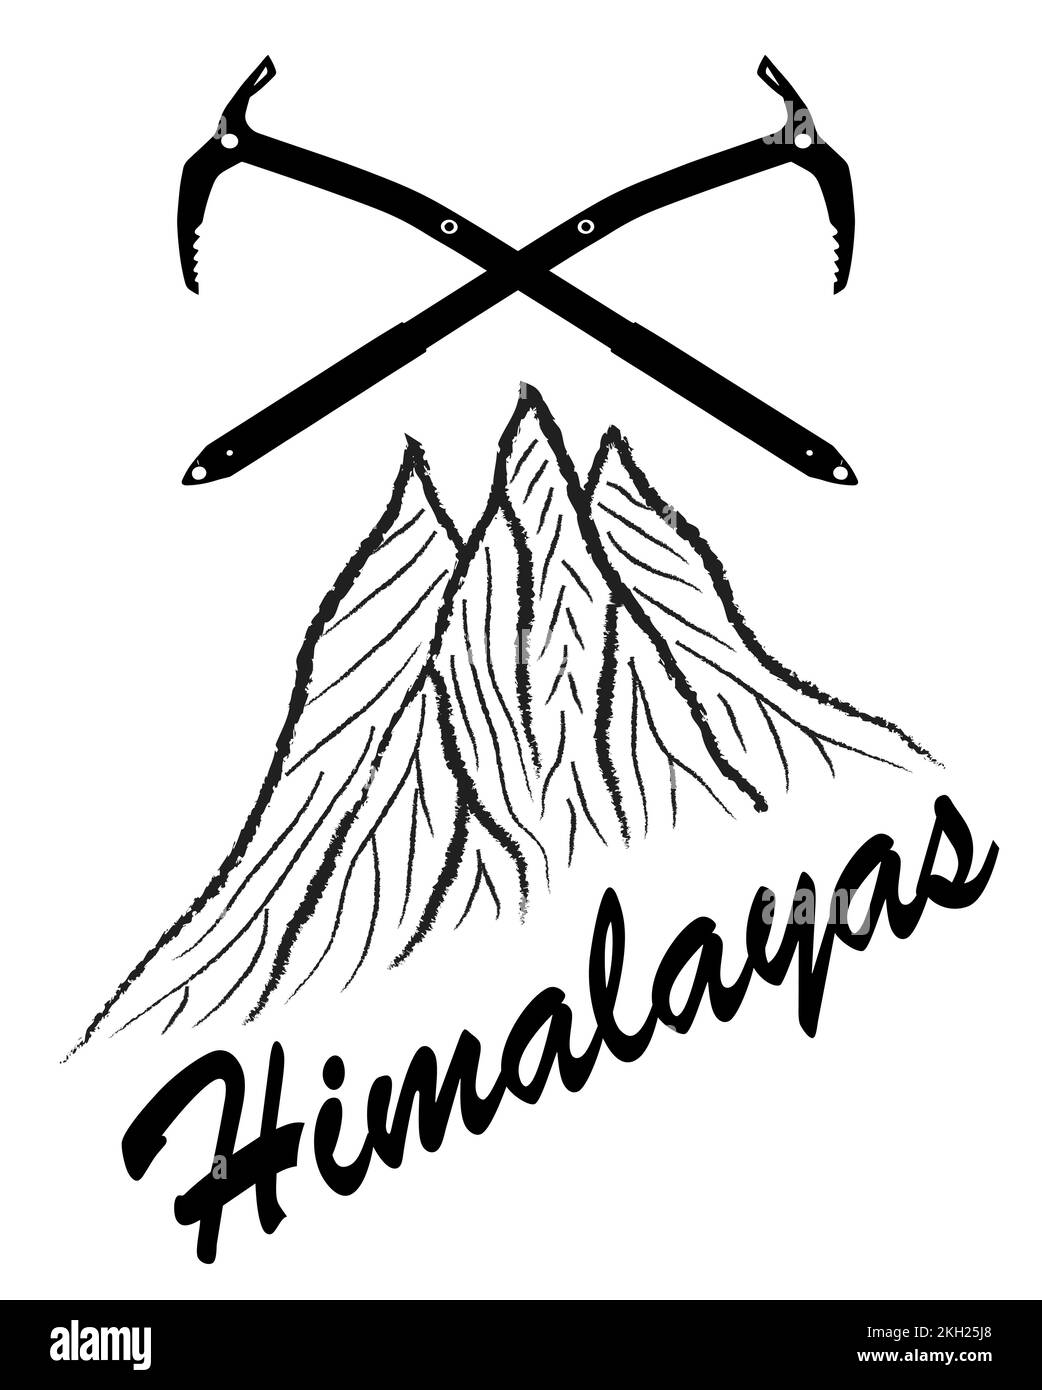 Montañas y dos hachas de hielo con texto Himalayas, logotipo de ilustración vectorial, blanco y negro Ilustración del Vector